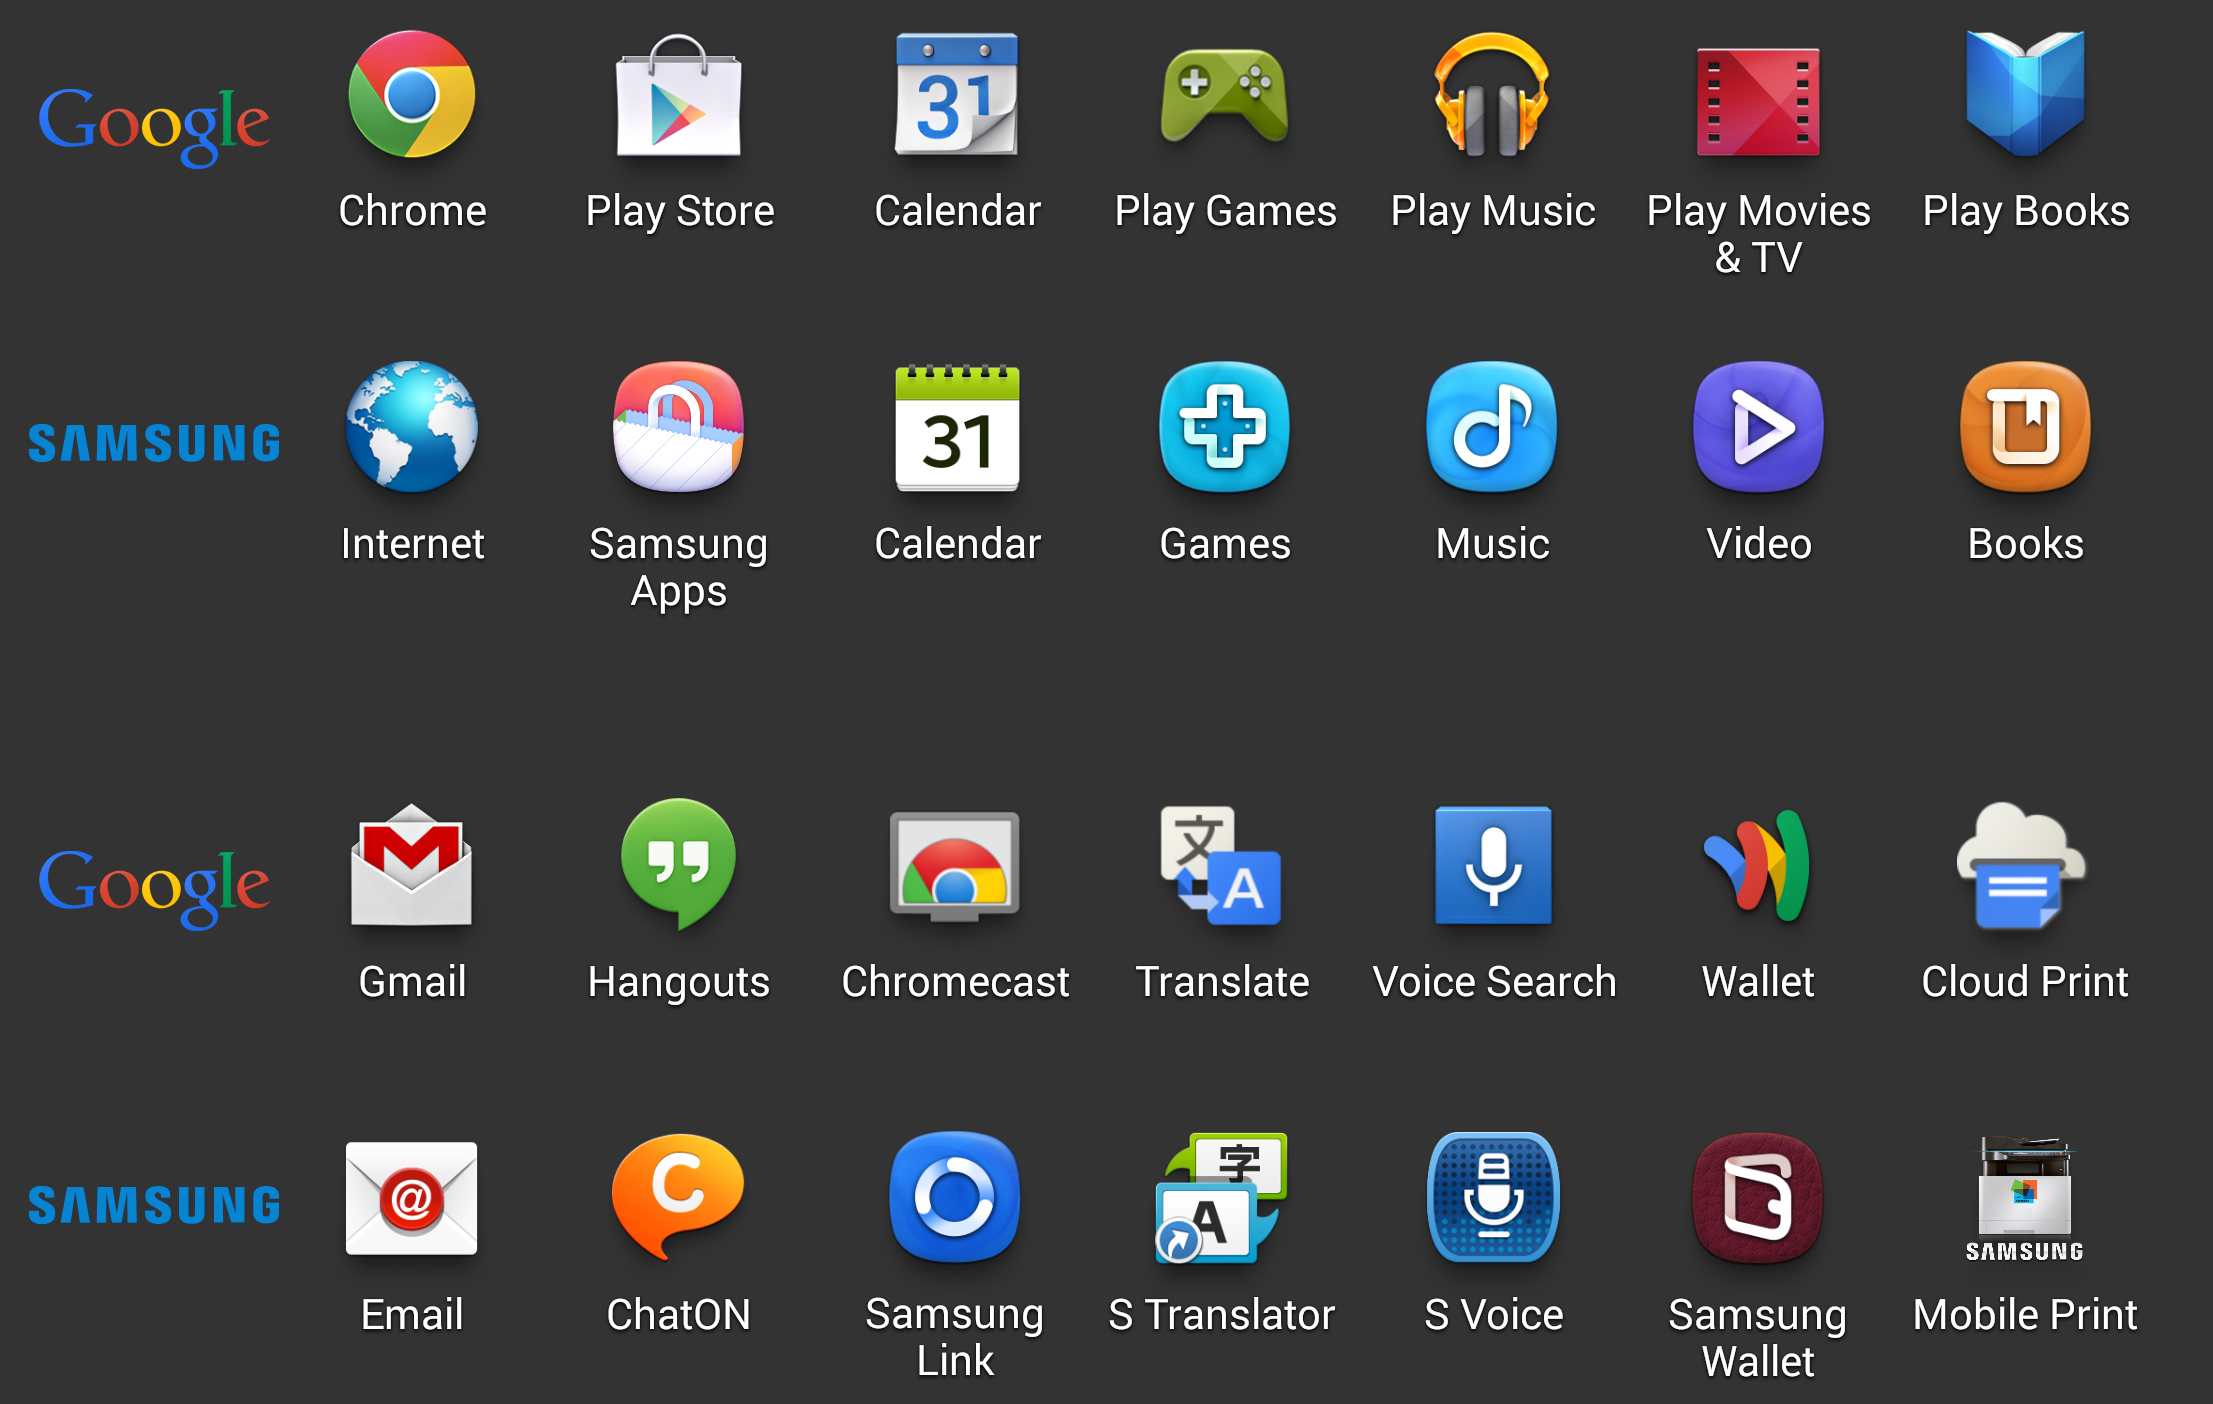 Les applications Google et leurs équivalents Samsung en 2013. Crédit : ArsTechnica